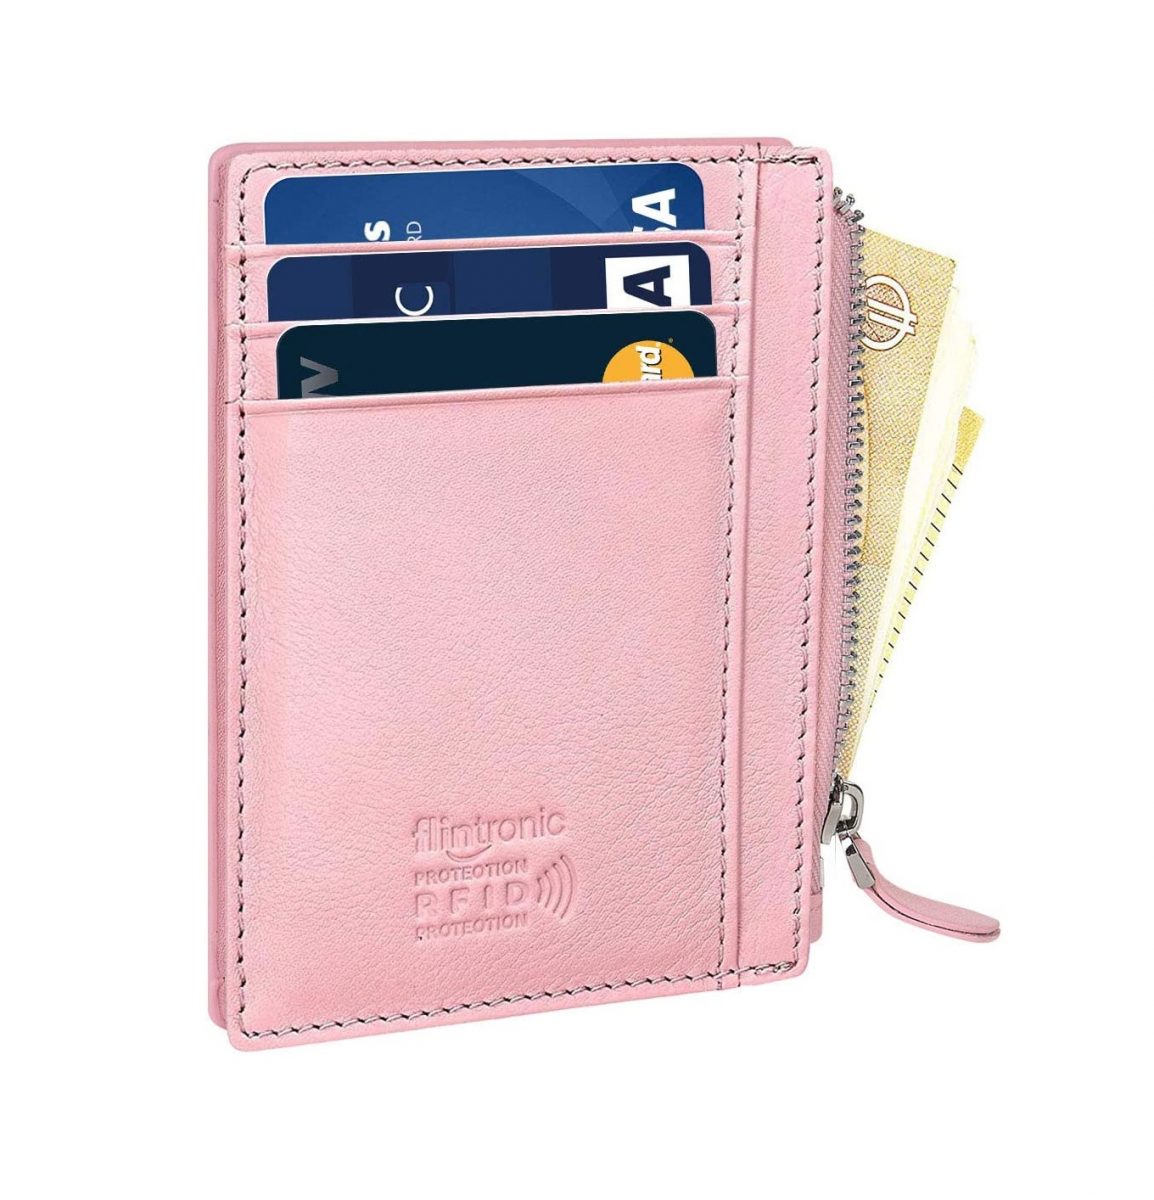 Flintronic mini kožená peněženka s RFID ochranou - Růžová se zipem